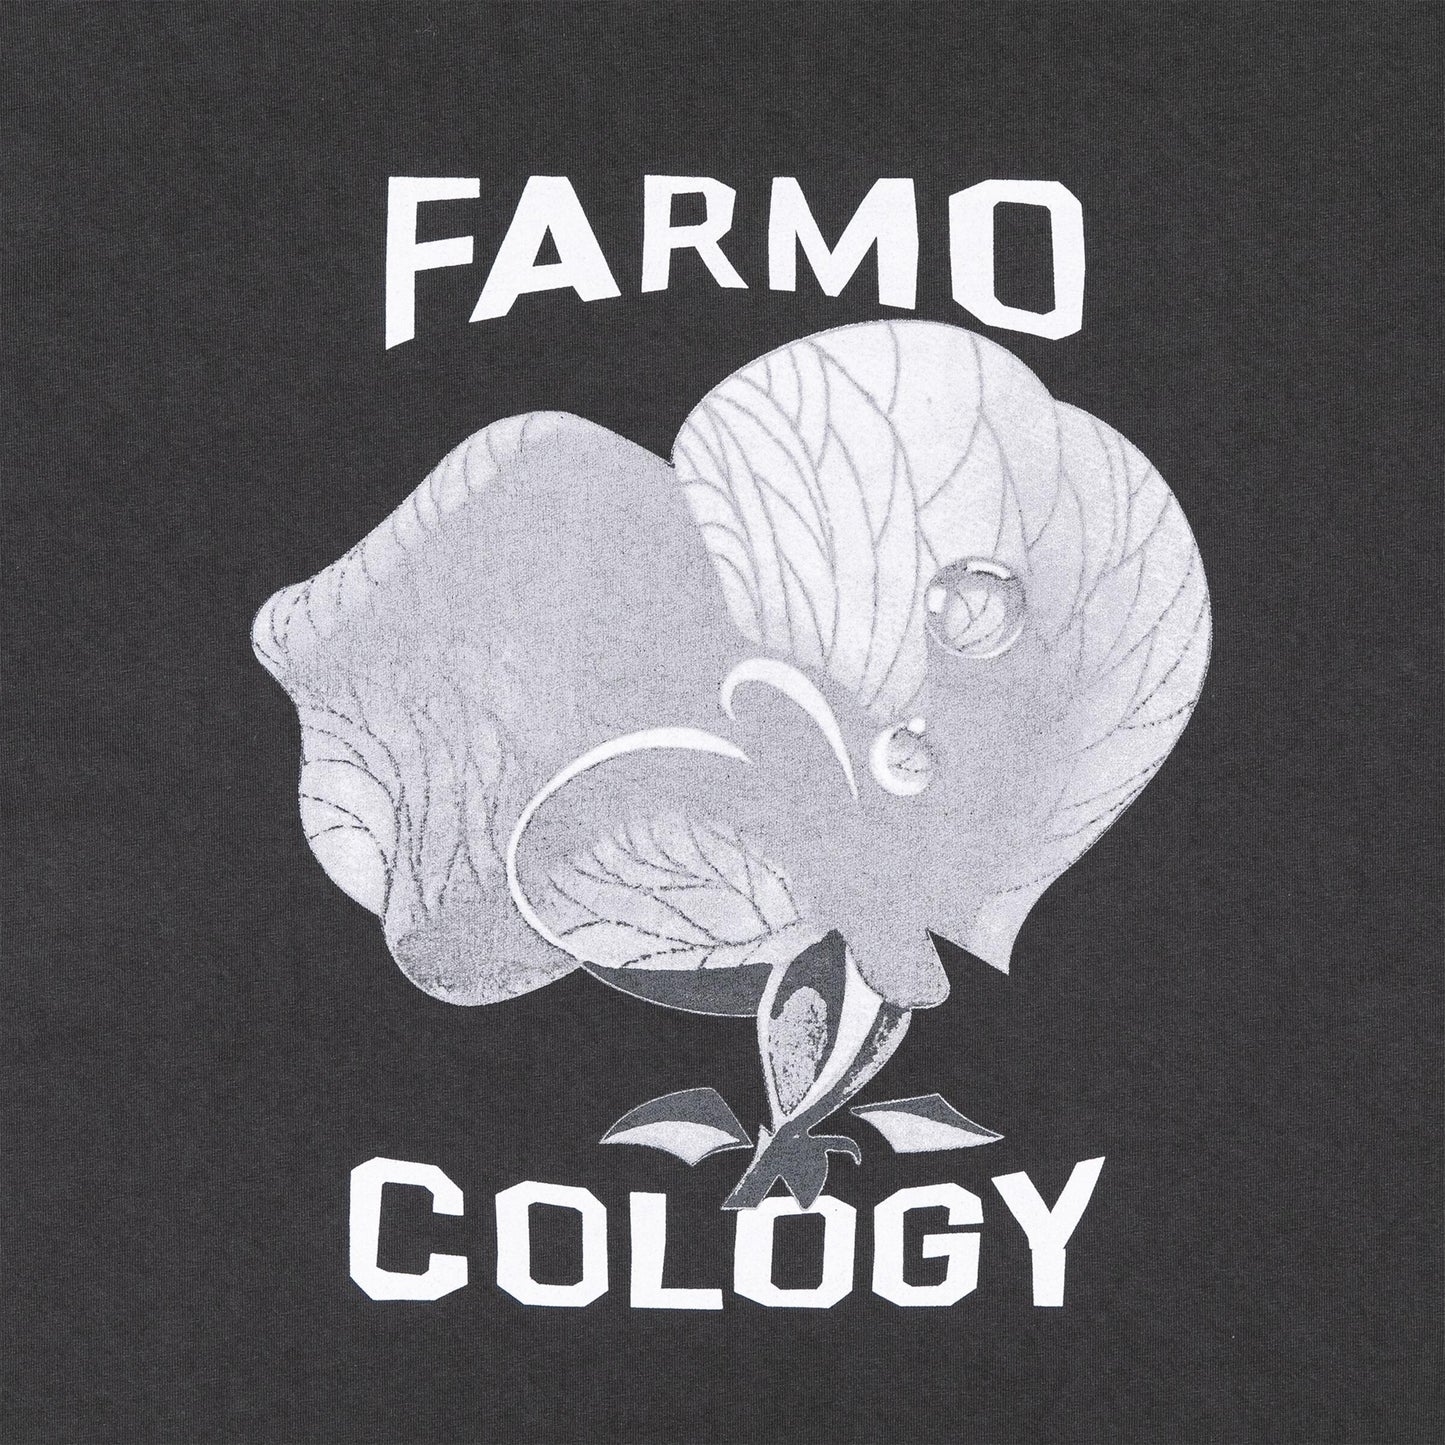 Farmo Cology Tee - Vintage Black